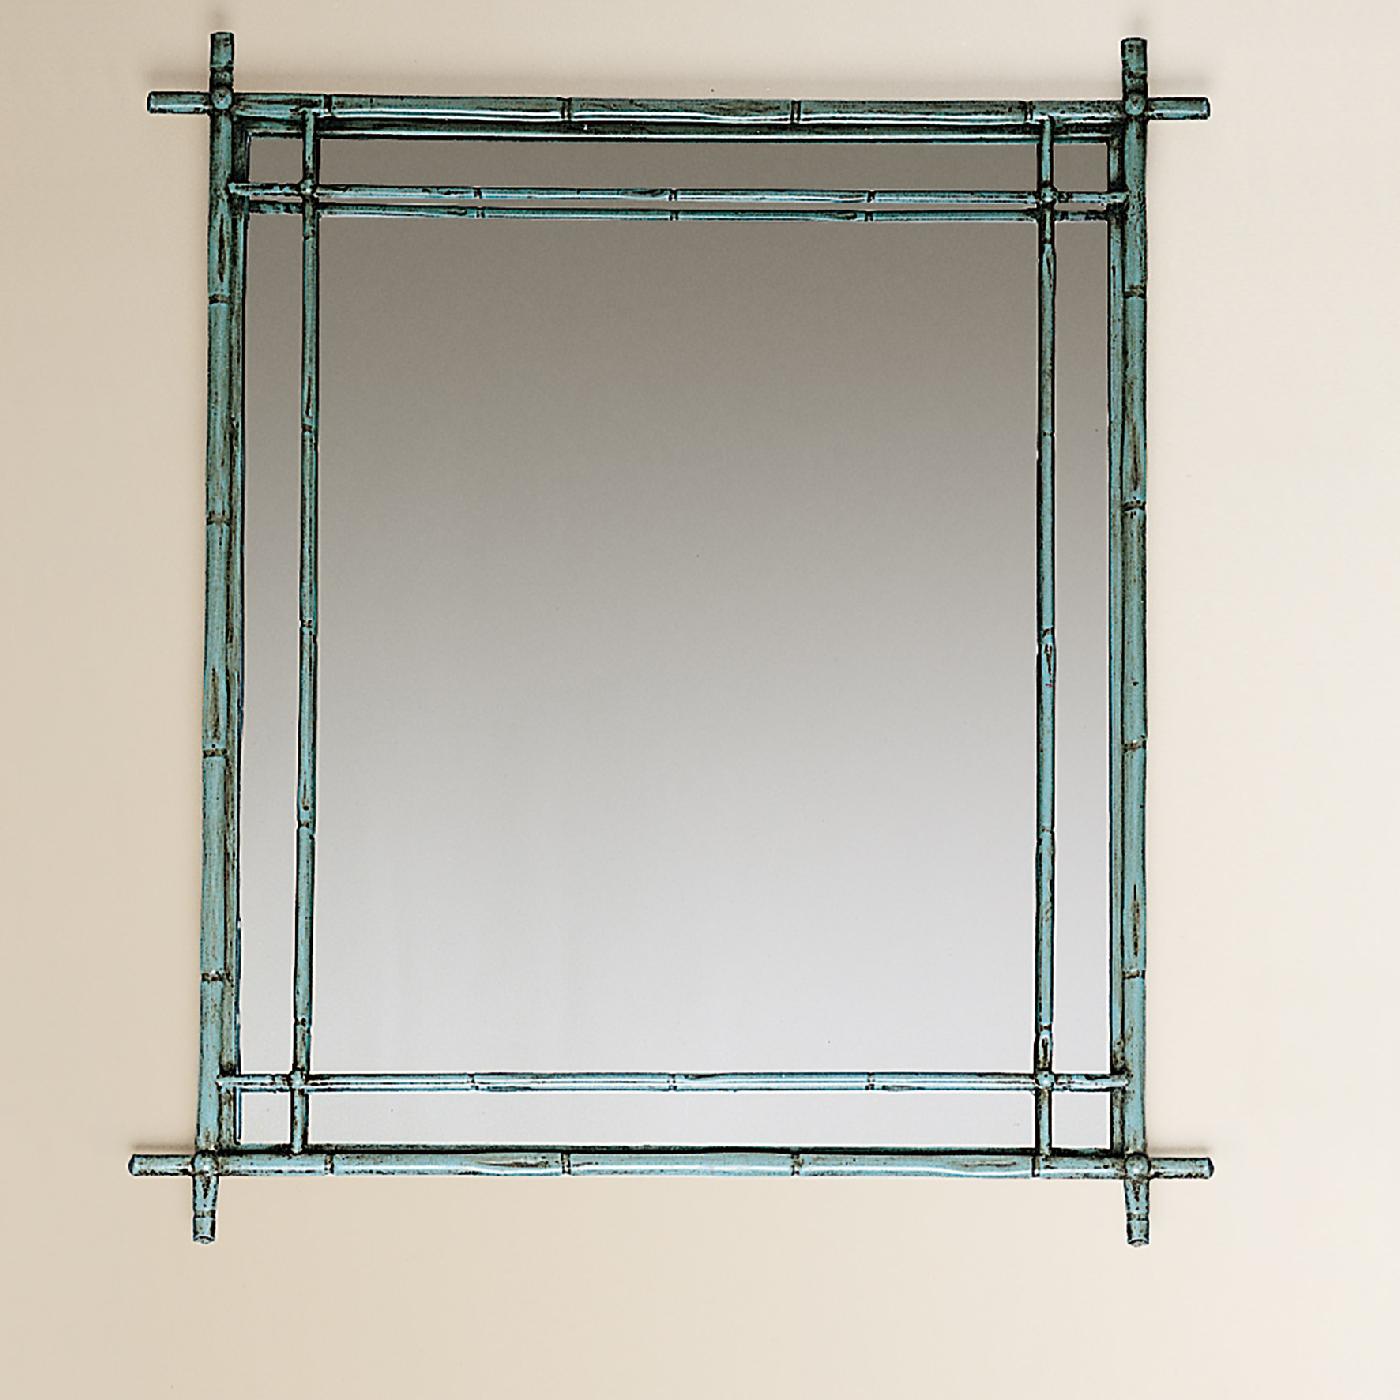 Dieser zeitlose und elegante Spiegel ist ein Blickfang in jedem Interieur. Ein doppeltes dekoratives Element teilt die rechteckige Reflexionsfläche und schließt sie in einen zarten Rahmen aus geschmiedetem Eisen in Form von schlanken Bambusstäben